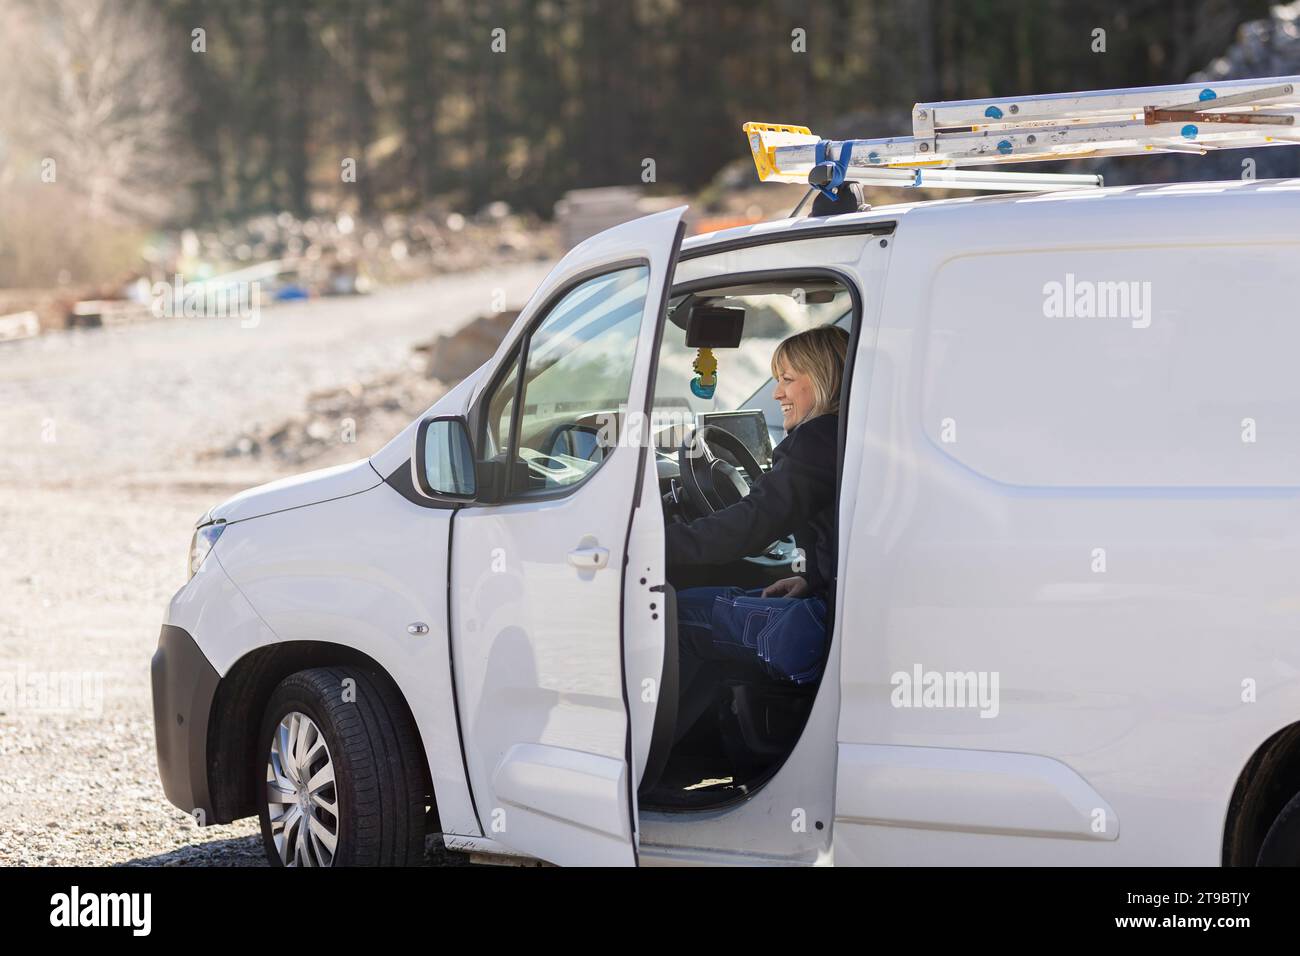 Technicien souriant assis dans la camionnette le jour ensoleillé Banque D'Images